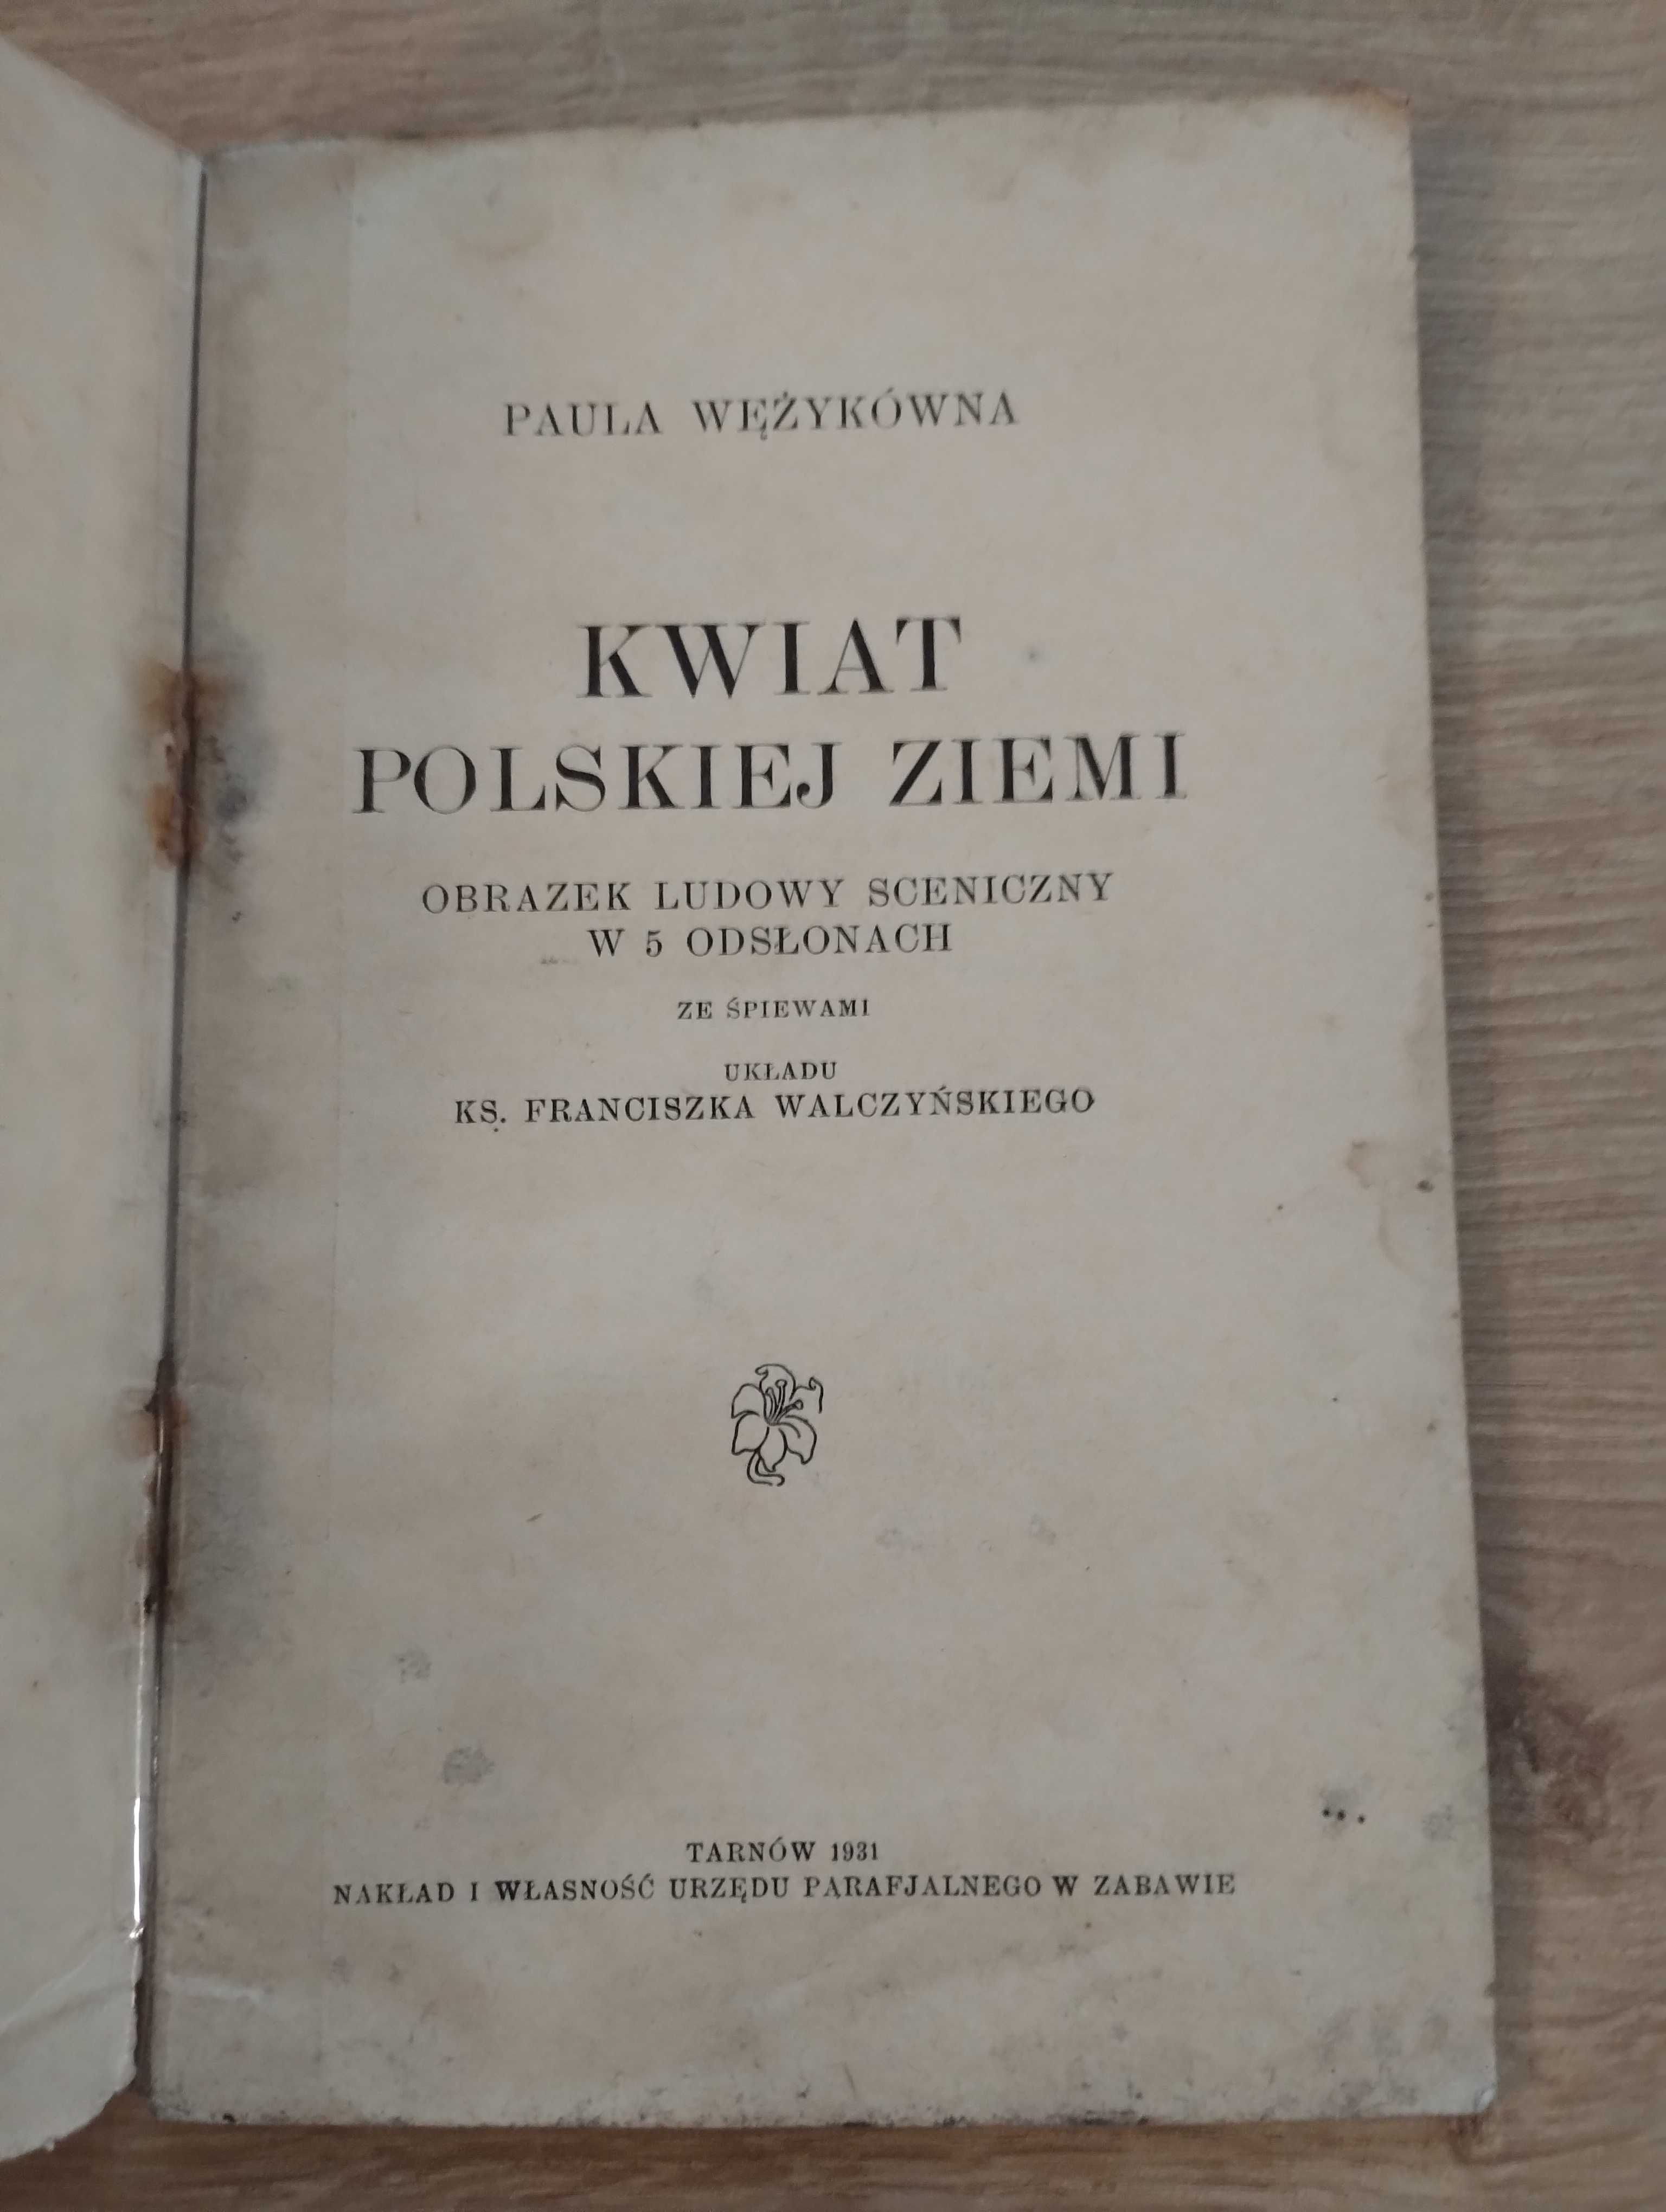 Wężykówna Kwiat polskiej ziemi obrazek ludowy sceniczny 1931